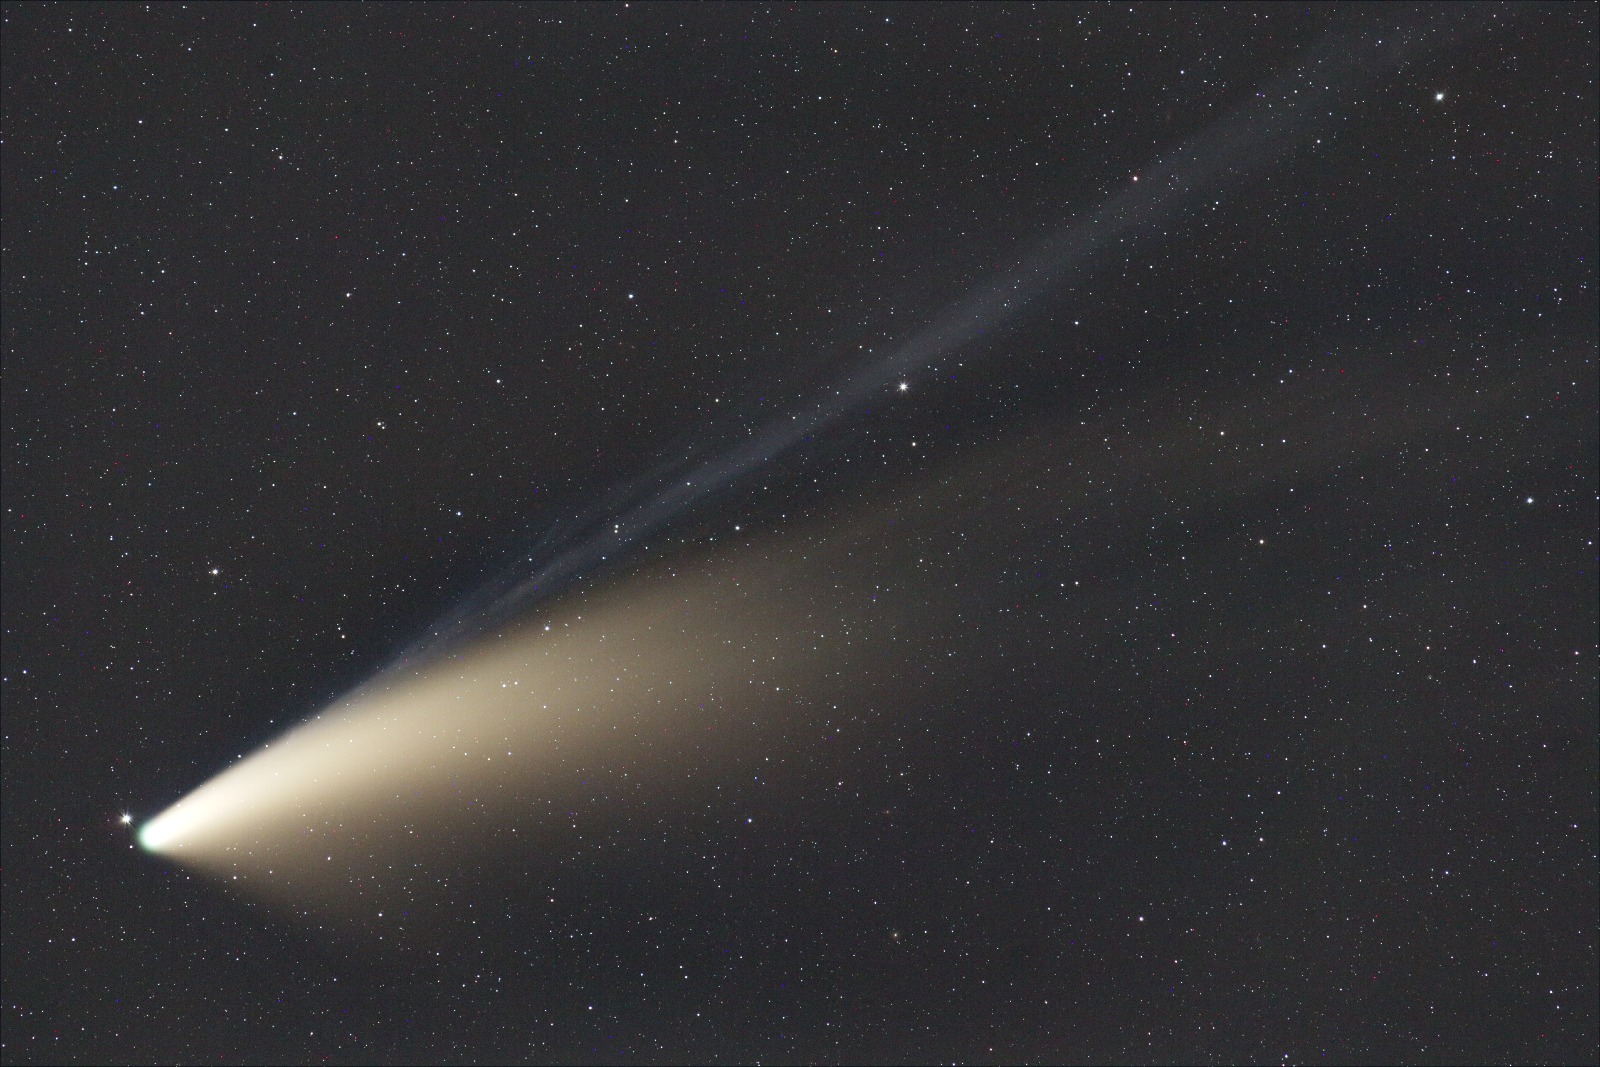 cometa c/2020 f3 neowise [18jul2020]...